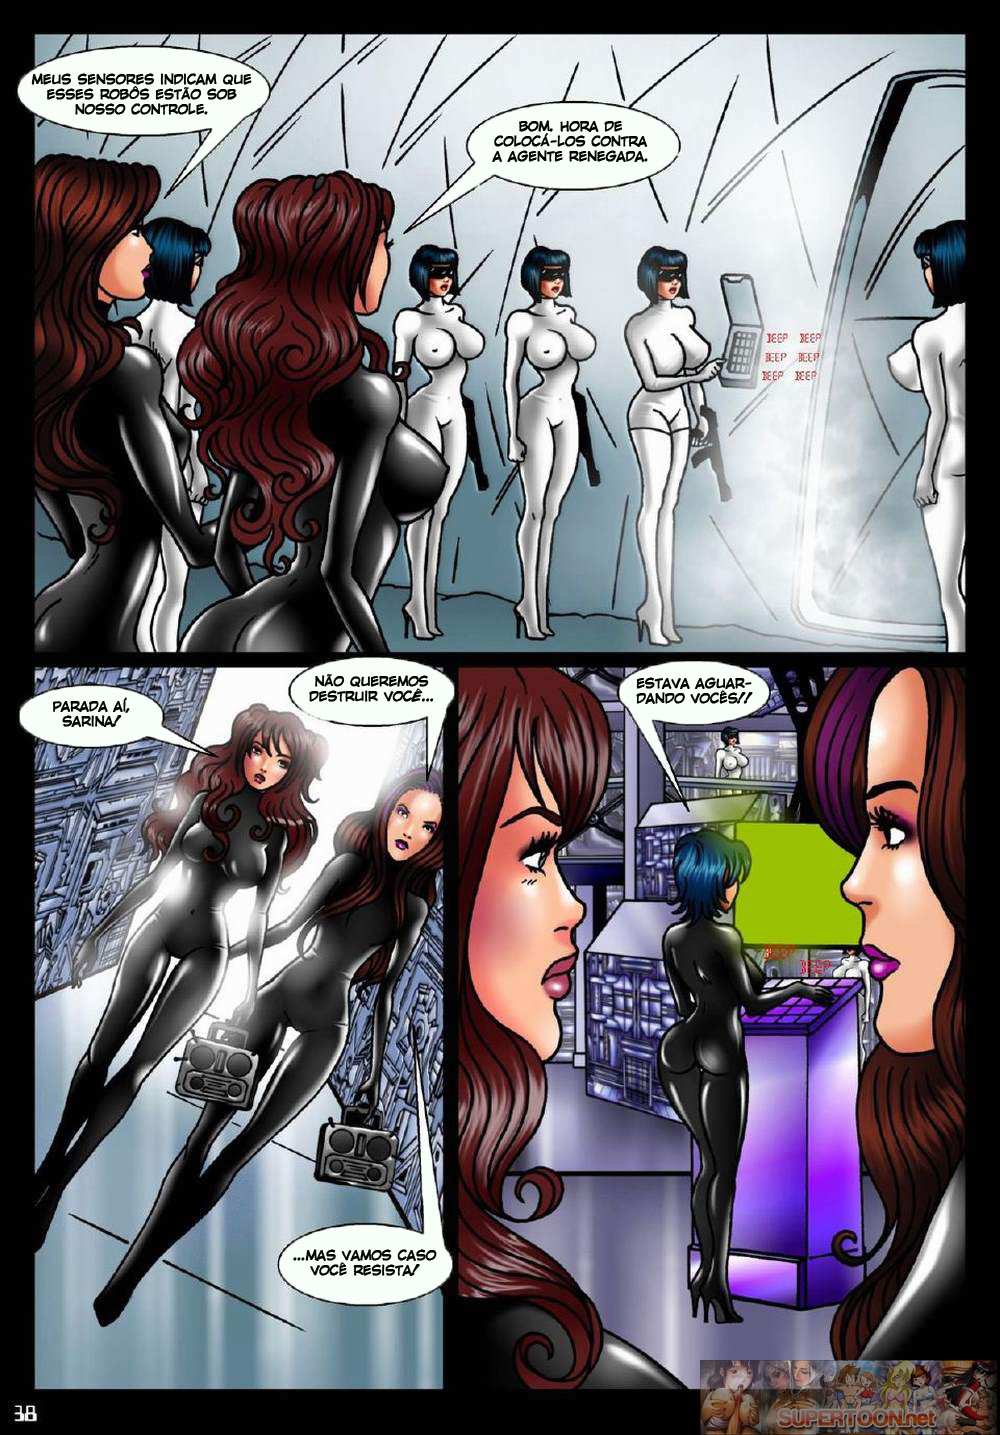 Robôs renegadas – Quadrinhos de sexo (1)